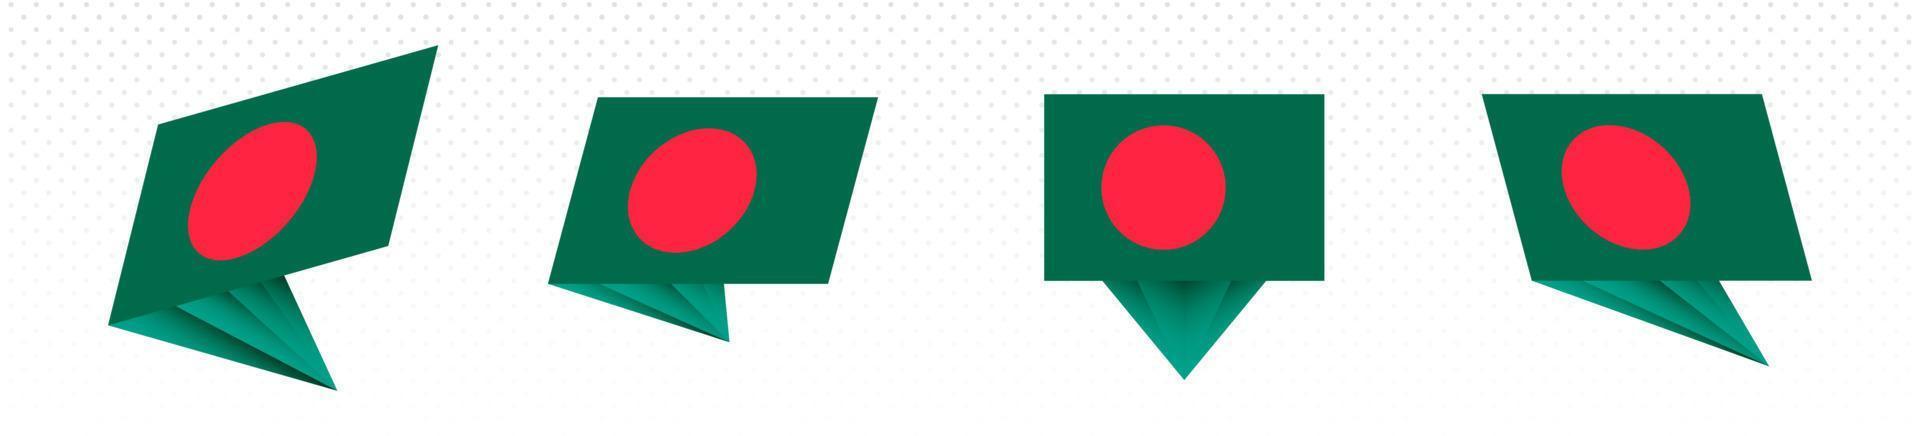 bandera de bangladesh en diseño abstracto moderno, juego de banderas. vector